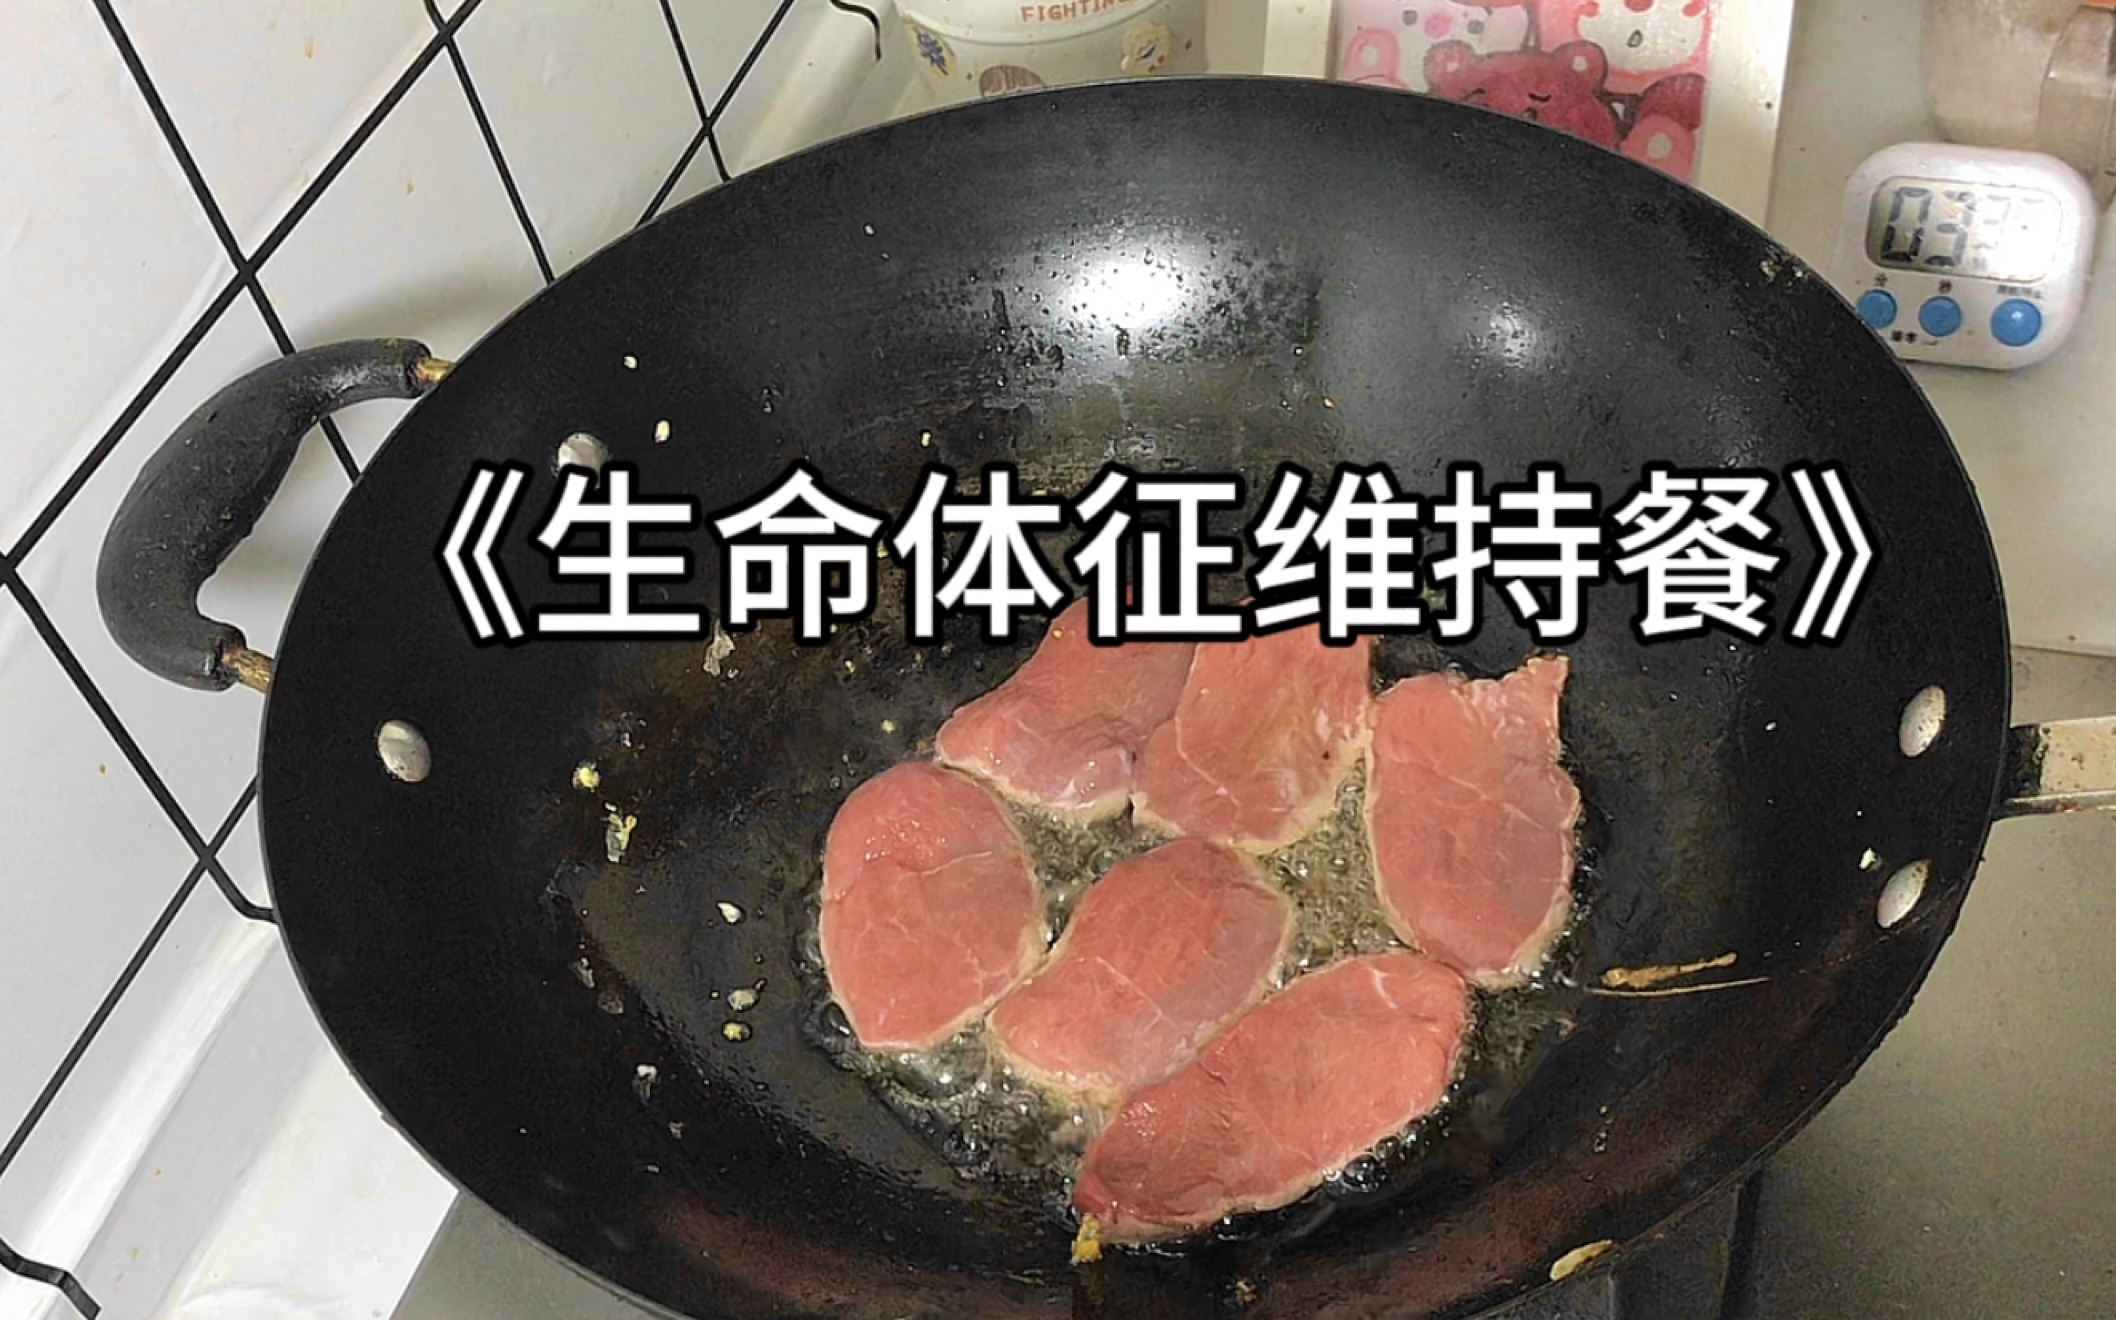 10分钟晚餐 牛肉炒饭